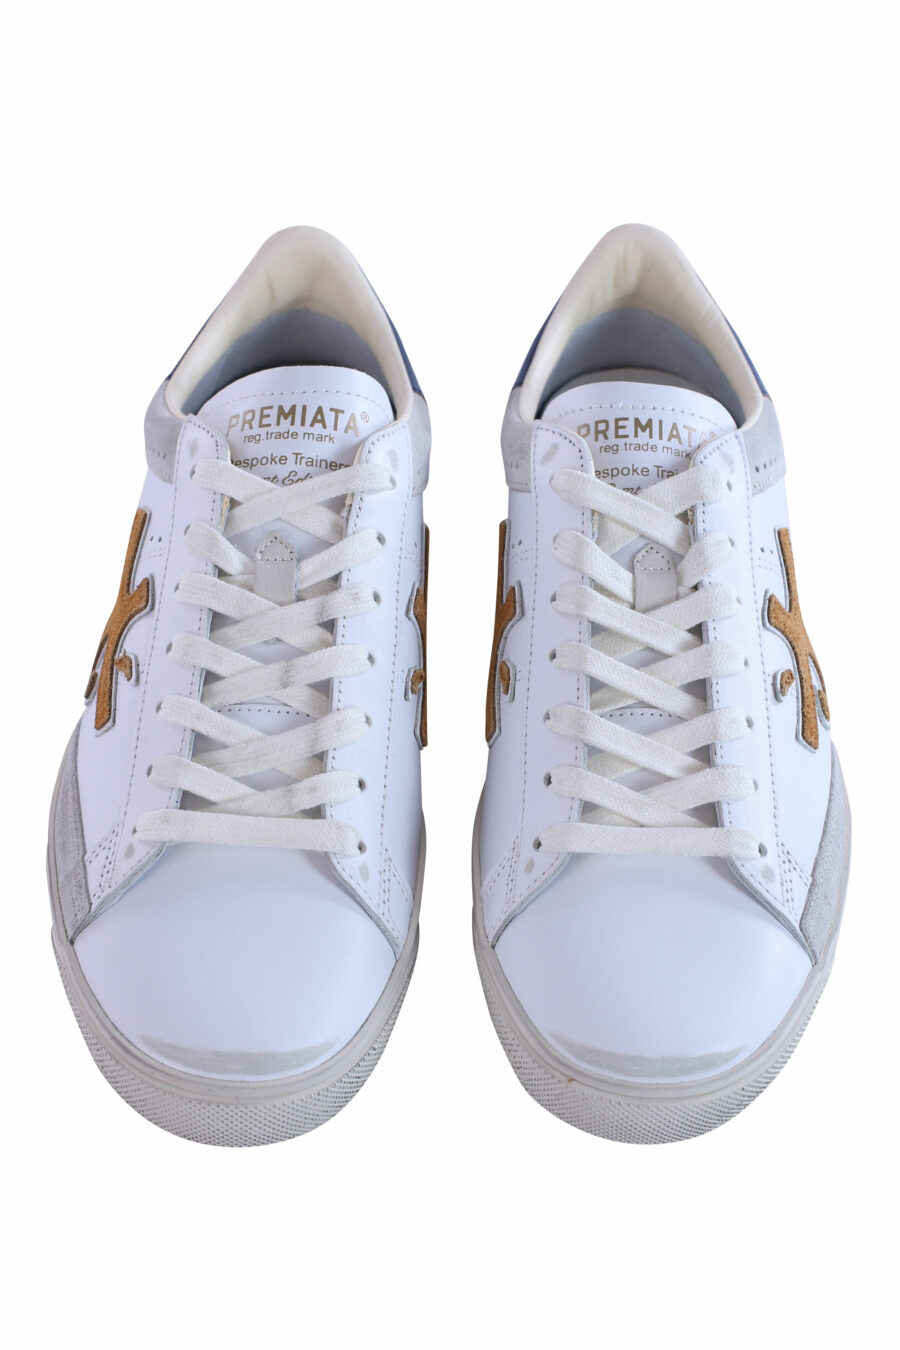 Zapatillas blancas con gris y marrón "steven 5771" - IMG 2958